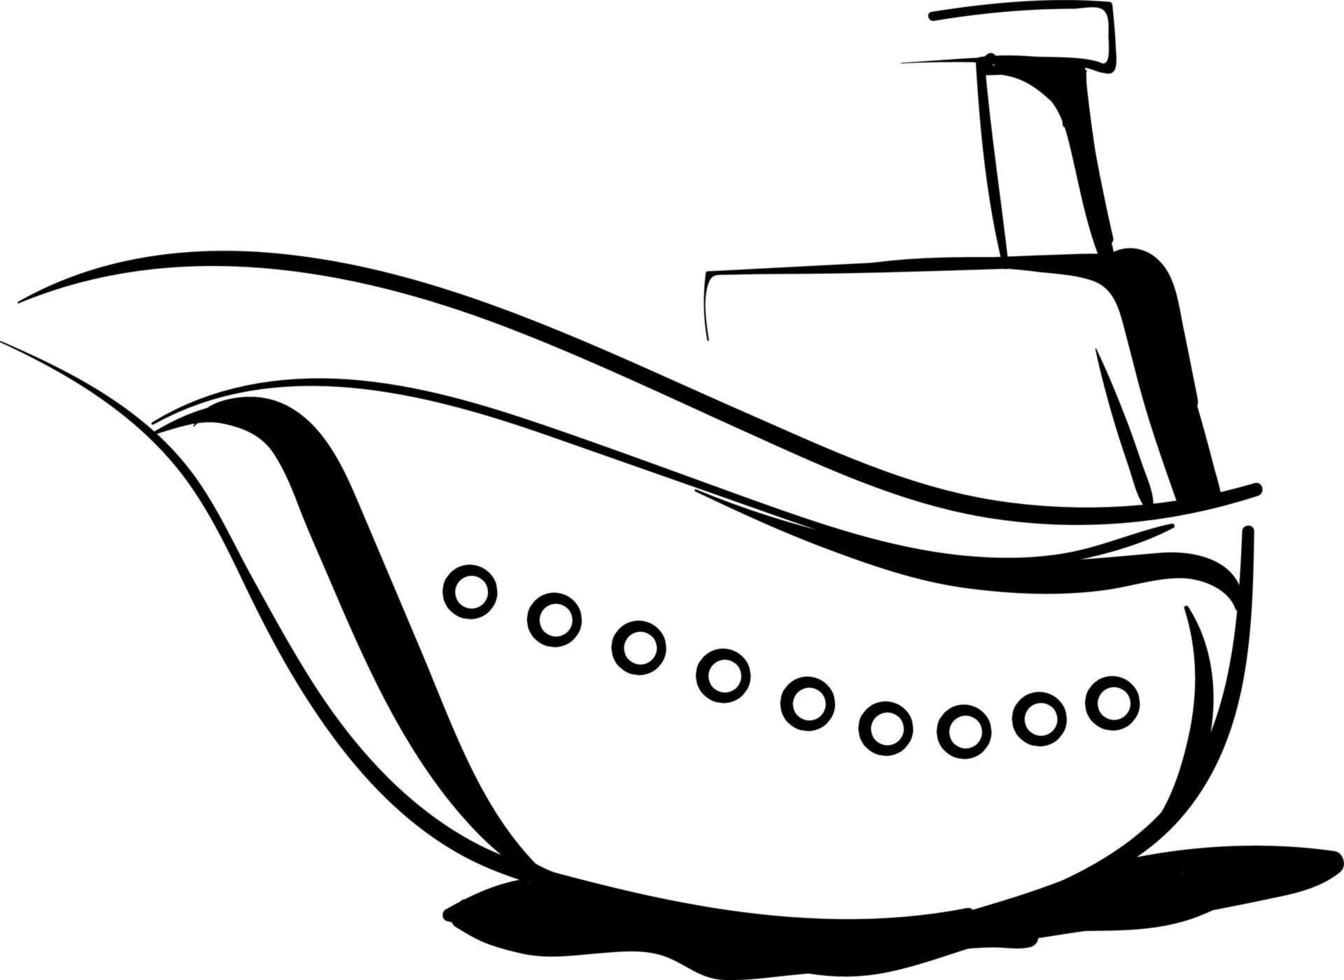 navire décoratif, illustration, vecteur sur fond blanc.